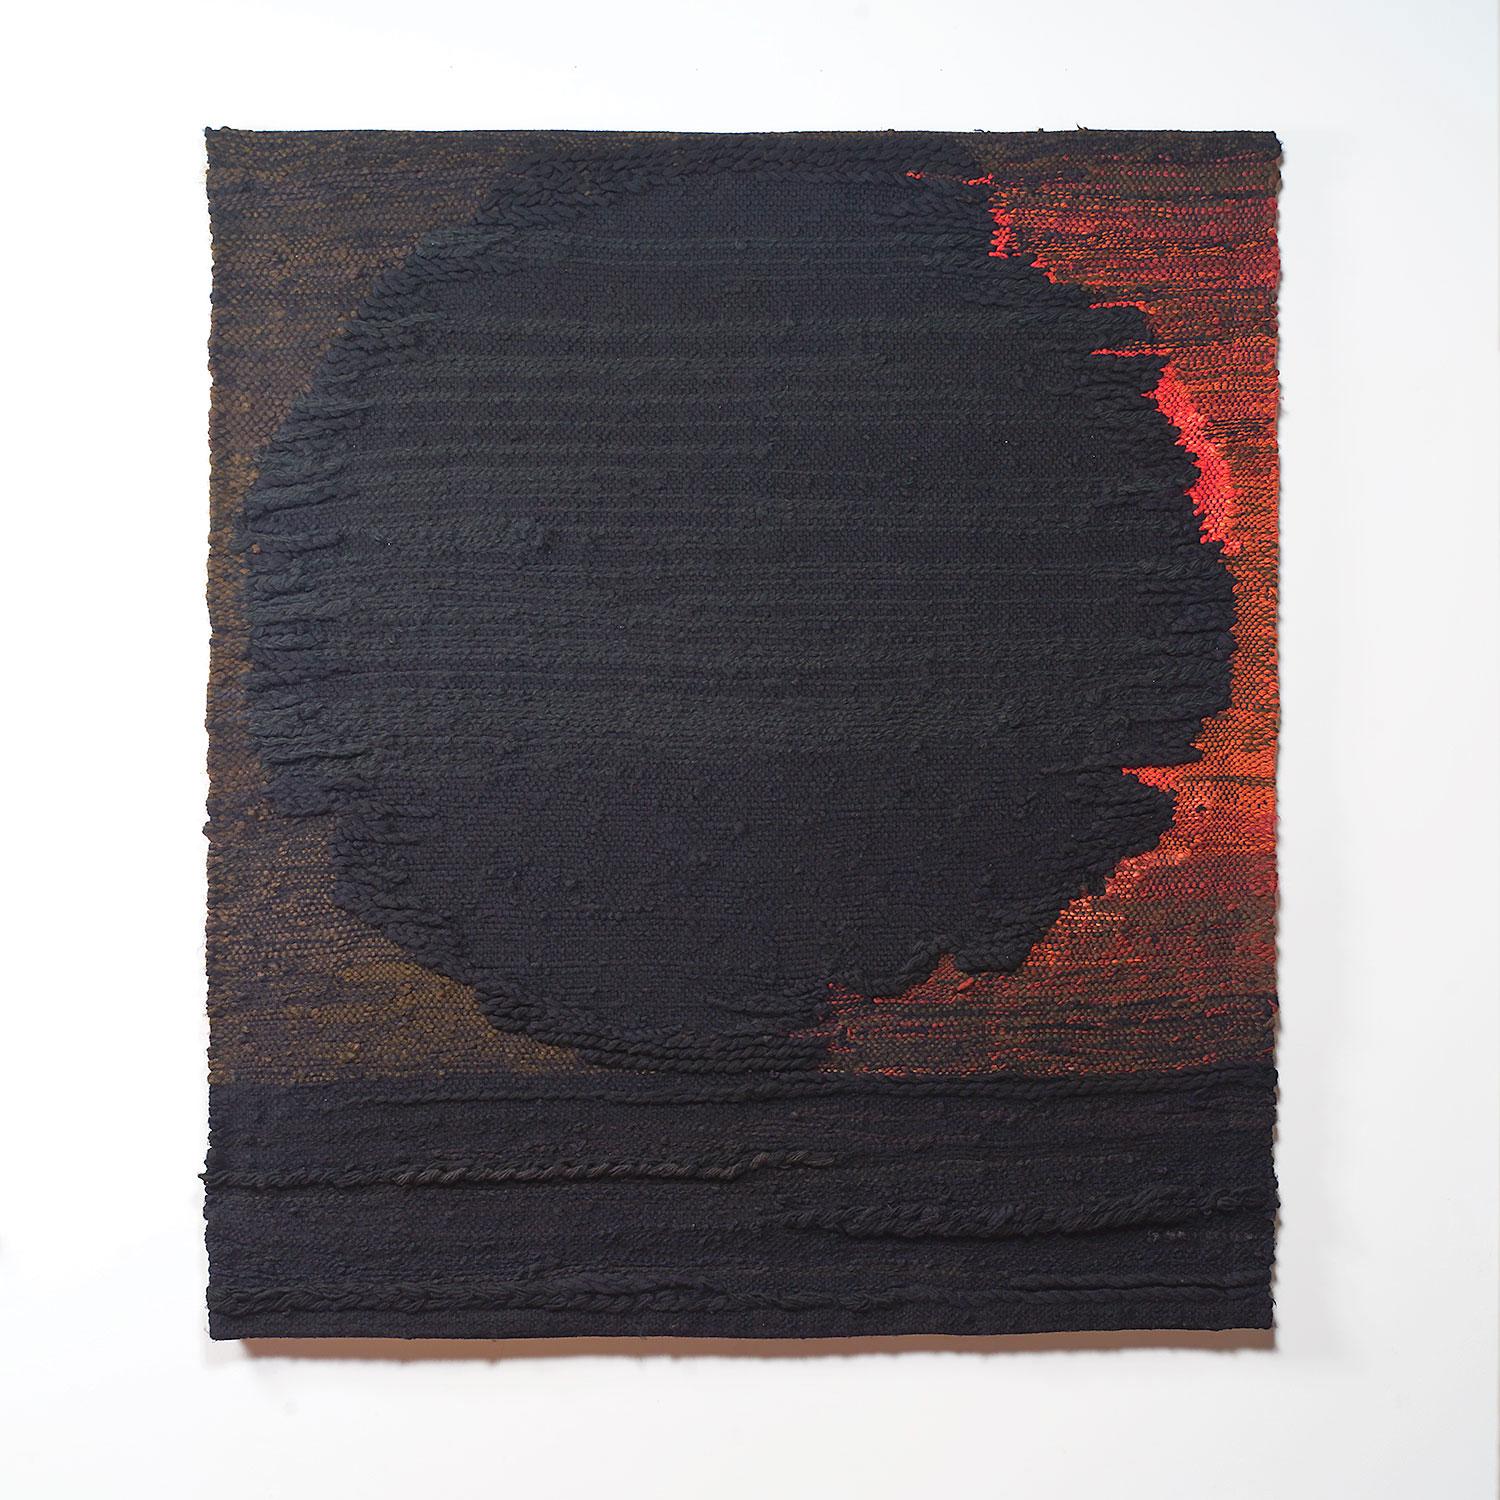 Sainte-Adéle (1969) der polnischen Faserkünstlerin Zofia Butrymowicz (1904-1987) ist ein handgewebter Wandteppich aus der Mitte des Jahrhunderts. Dieses Stück zeigt eine beeindruckende Dimensionalität und Textur mit dunklen, stimmungsvollen Tönen in